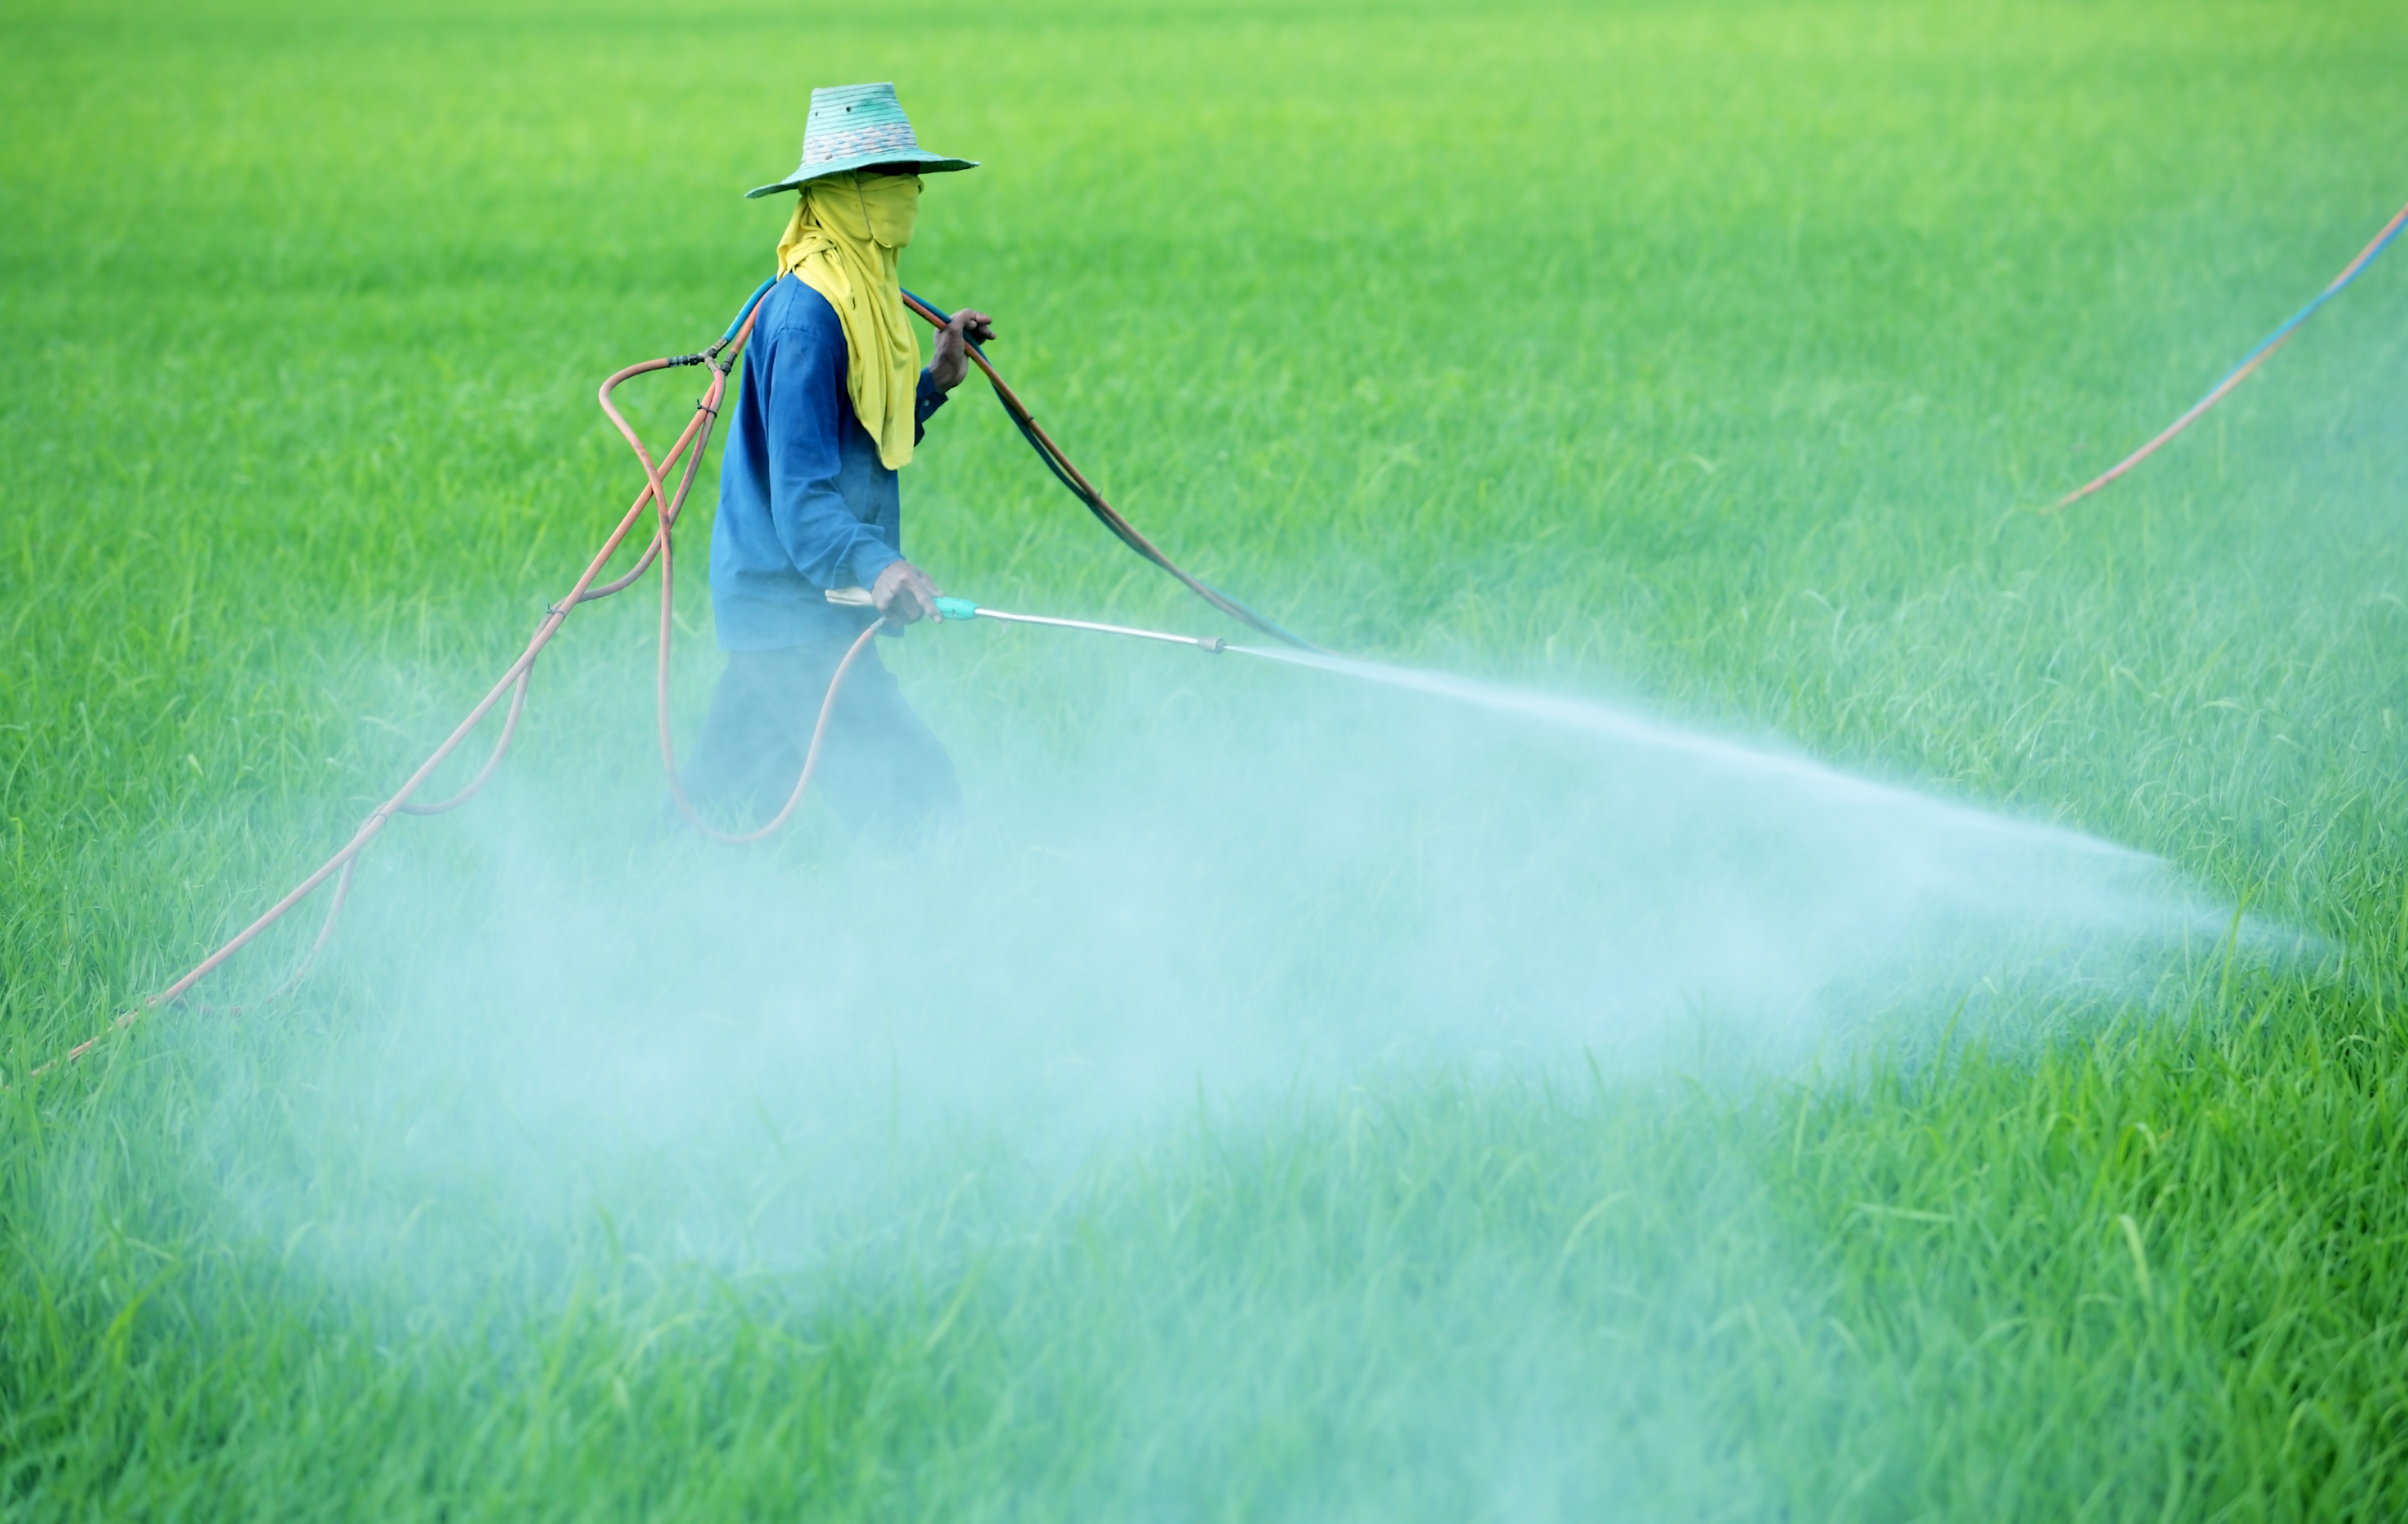 Обработка полей пестицидами. Пестициды и гербициды. Пестициды в сельском хозяйстве. Распыление пестицидов. Ядохимикаты в сельском хозяйстве.